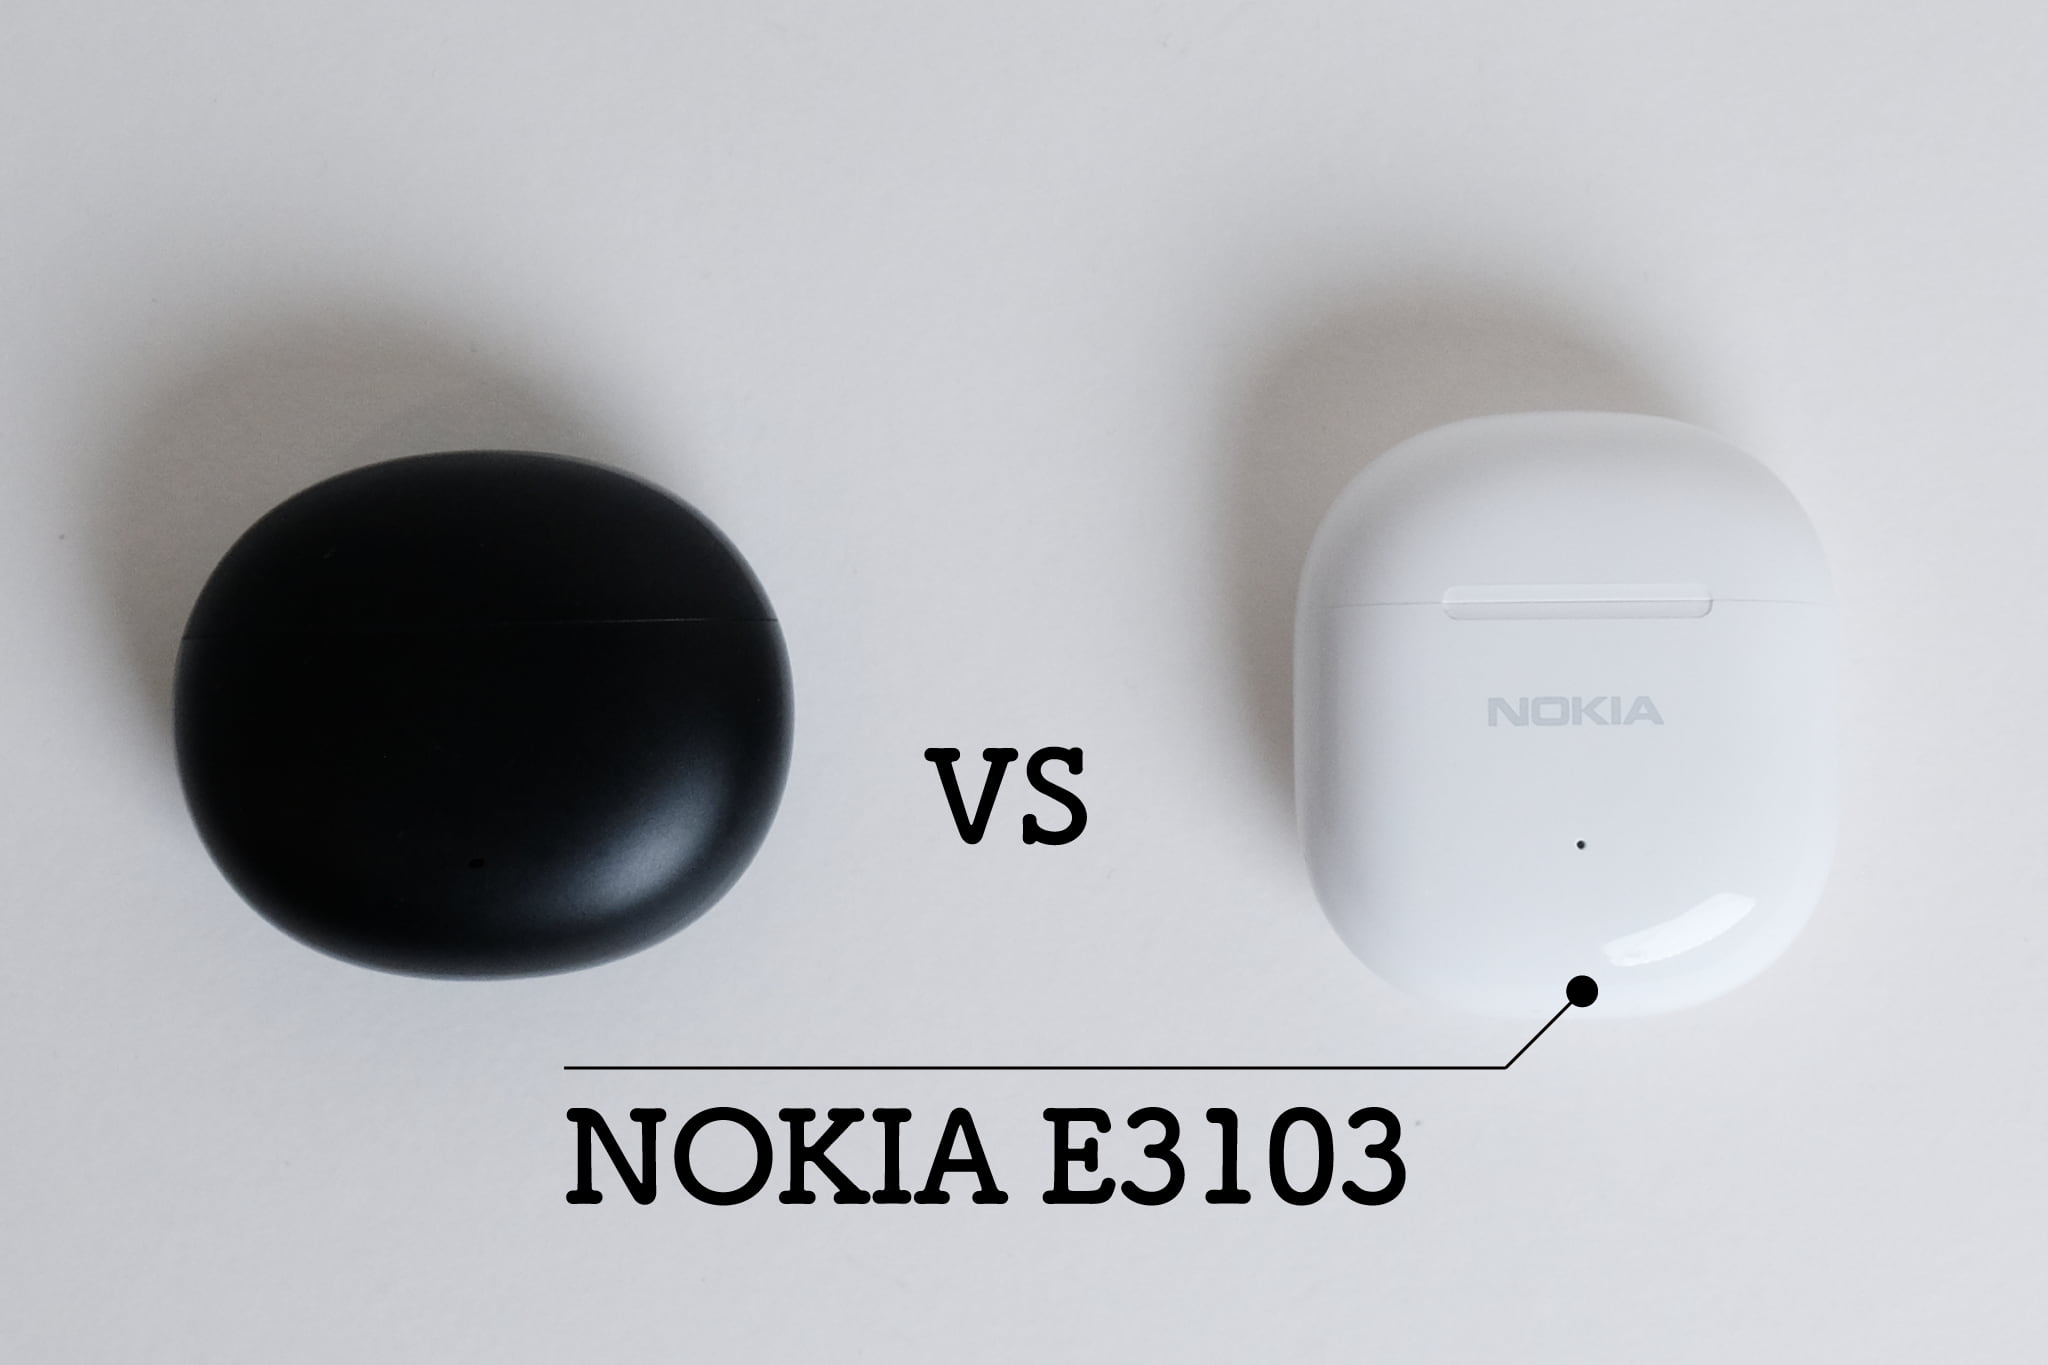 EDIFIER X2とNOKIA E3103を比較